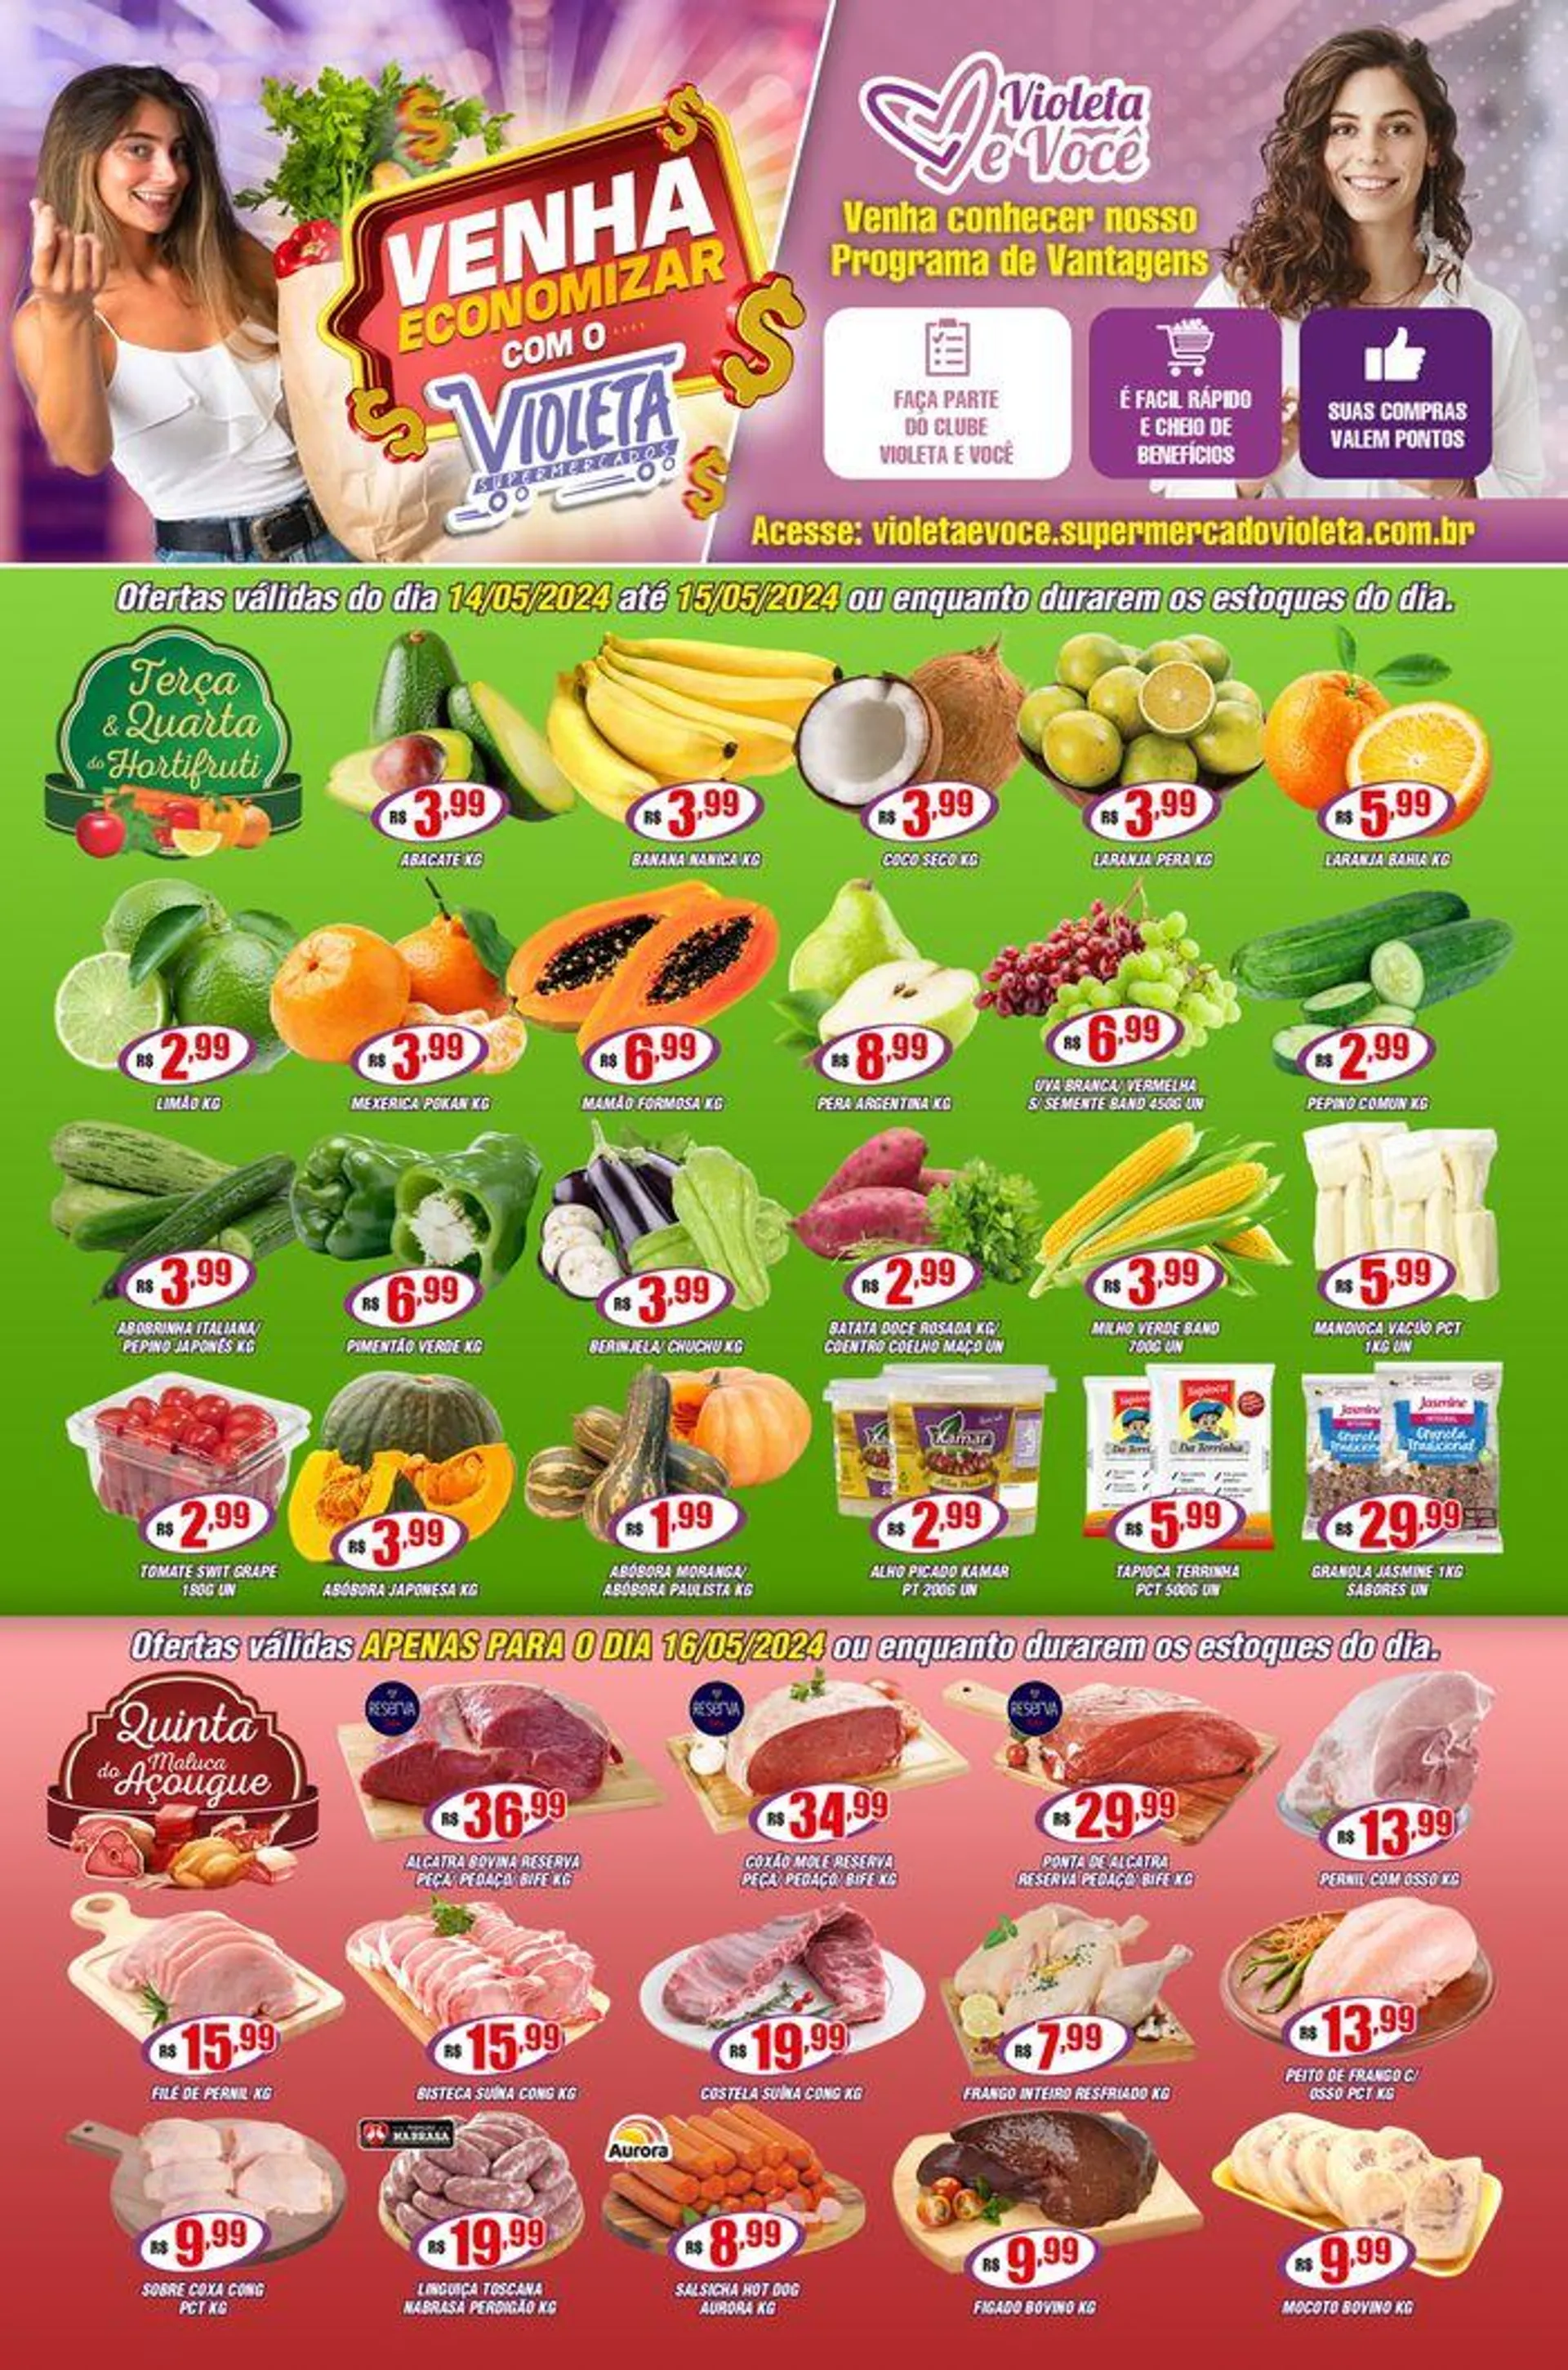 Ofertas Violeta Supermercados - 1